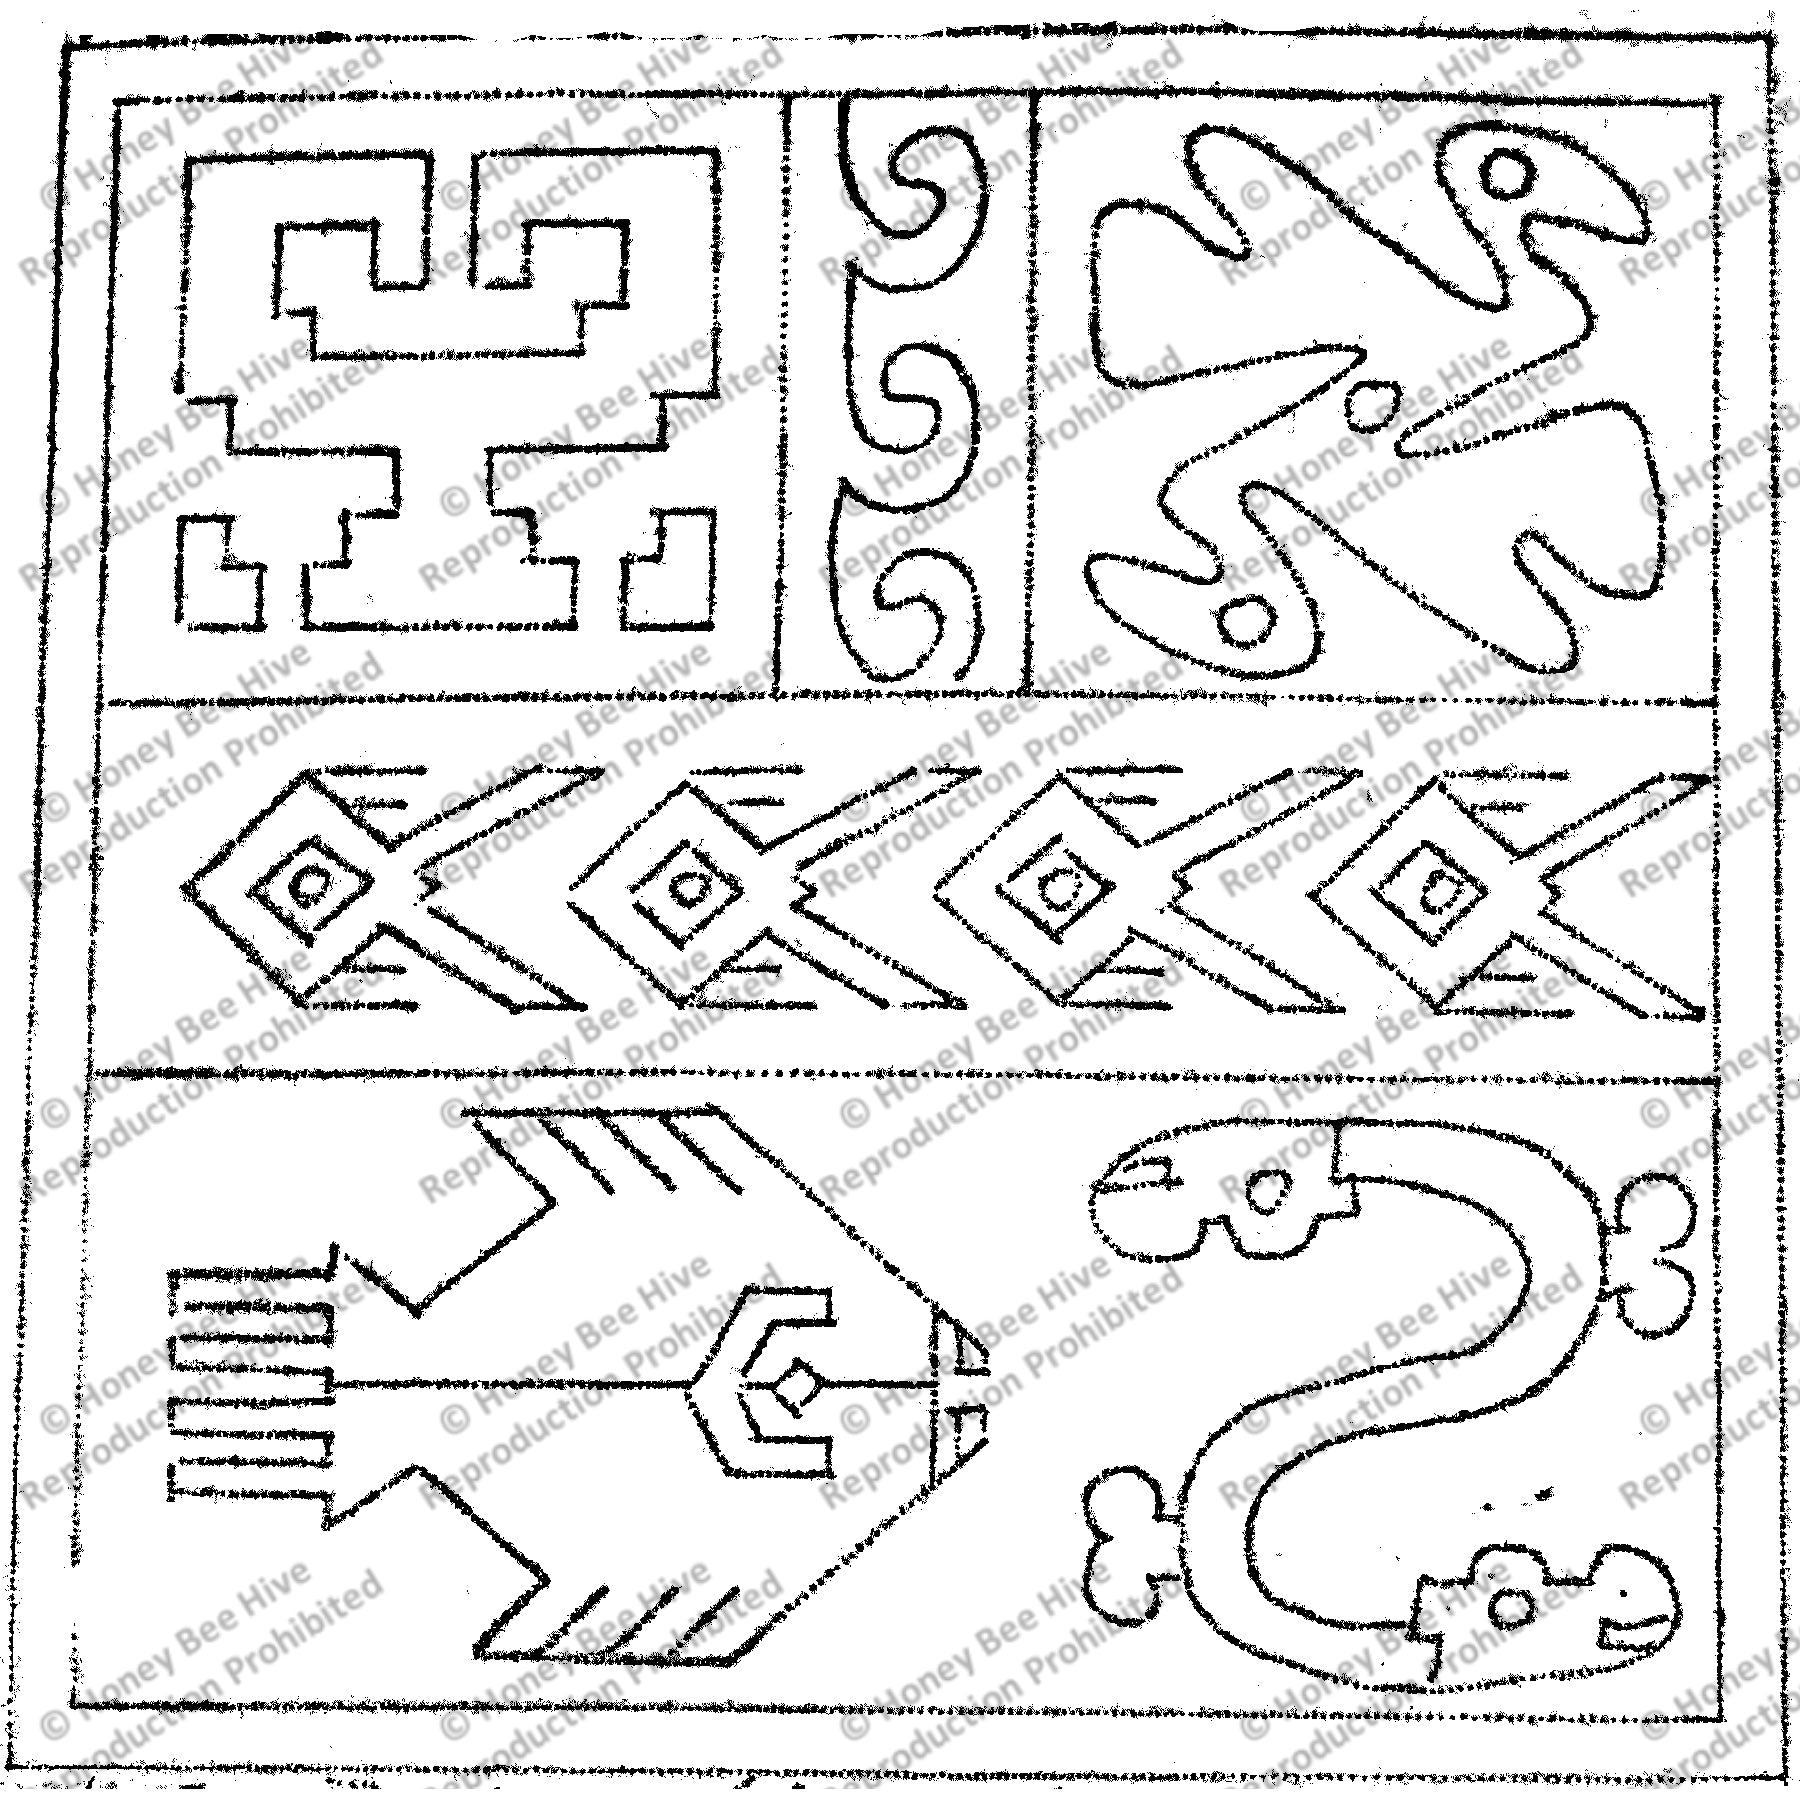 Peruvian Images, rug hooking pattern